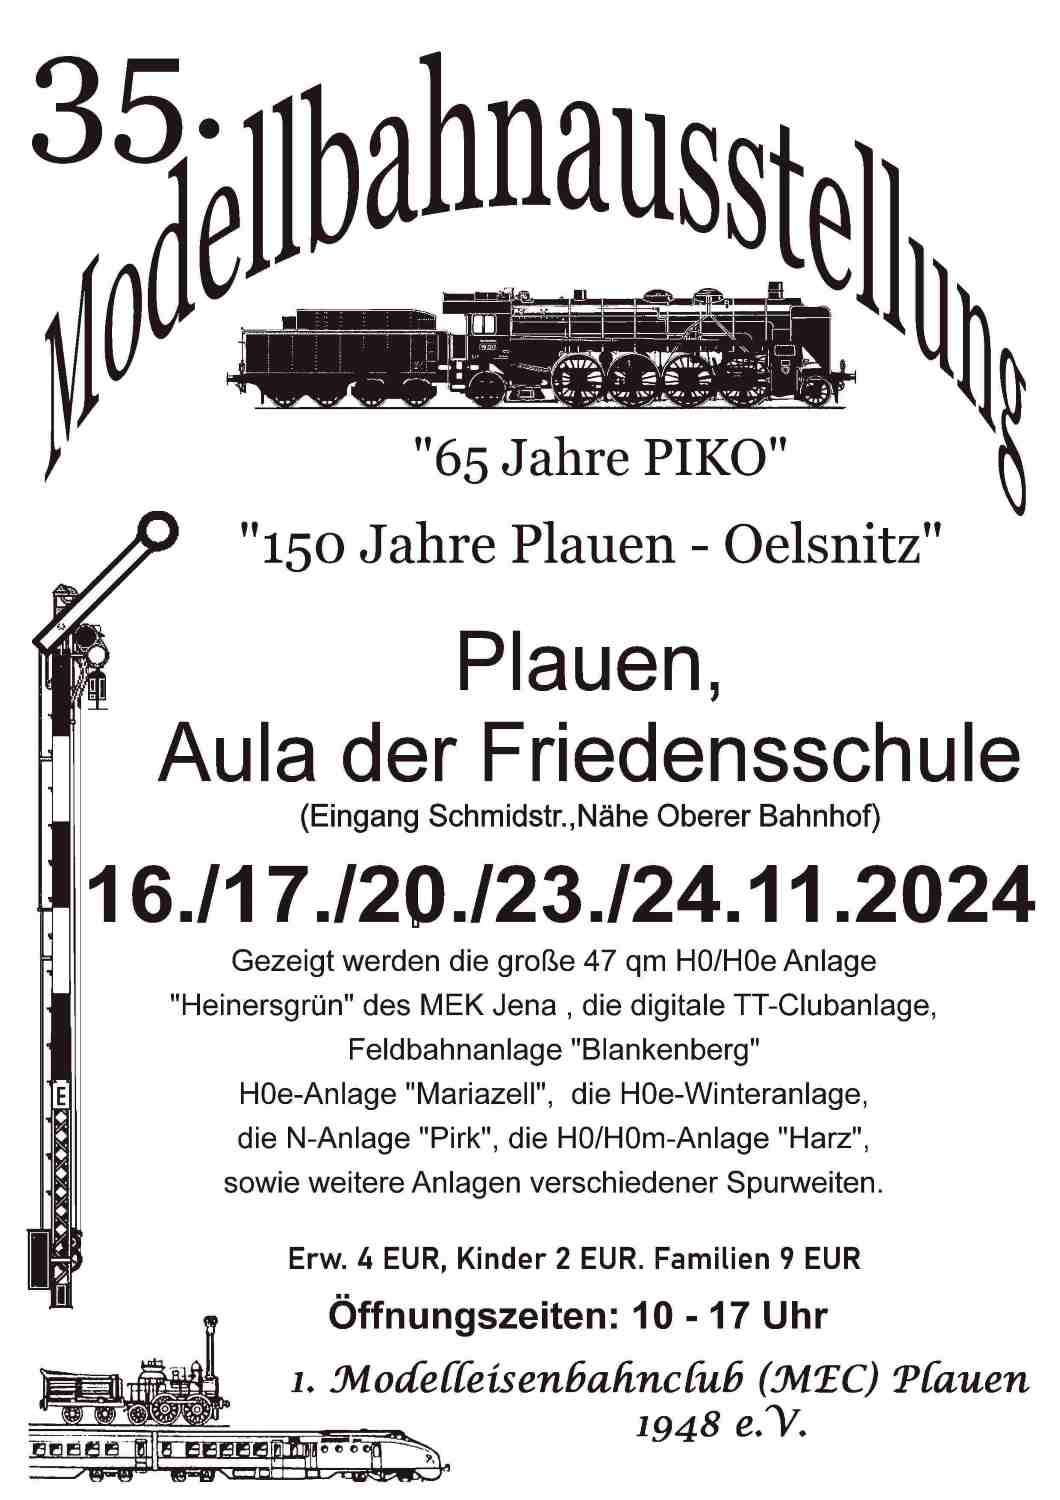 35. Modellbahnausstelung des 1. MEC Plauen 1948 e.V.